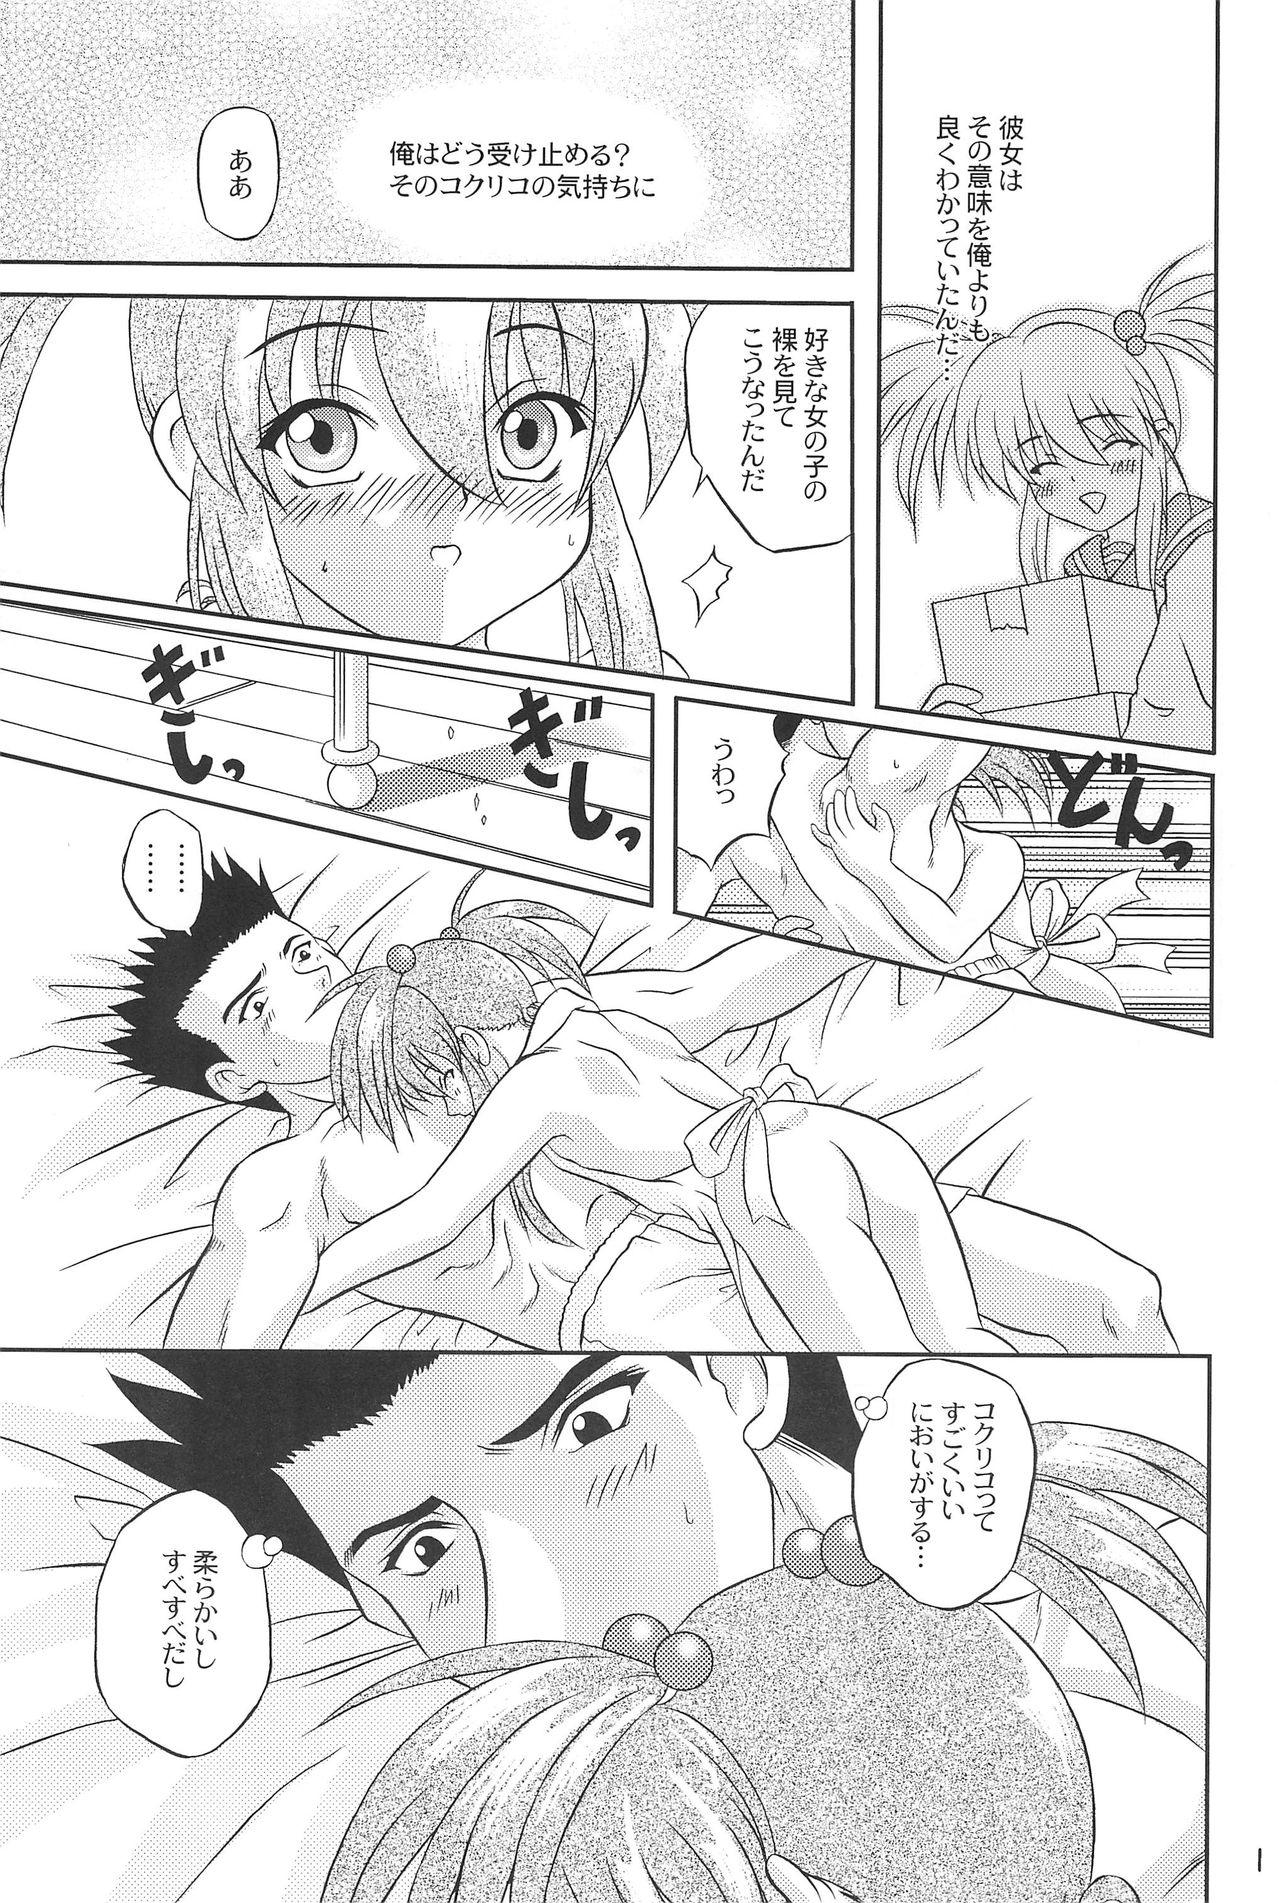 Horny Slut Kiti Kiti - Sakura taisen Sister princess Gakkou no kaidan Jungle wa itsumo hare nochi guu Concha - Page 11